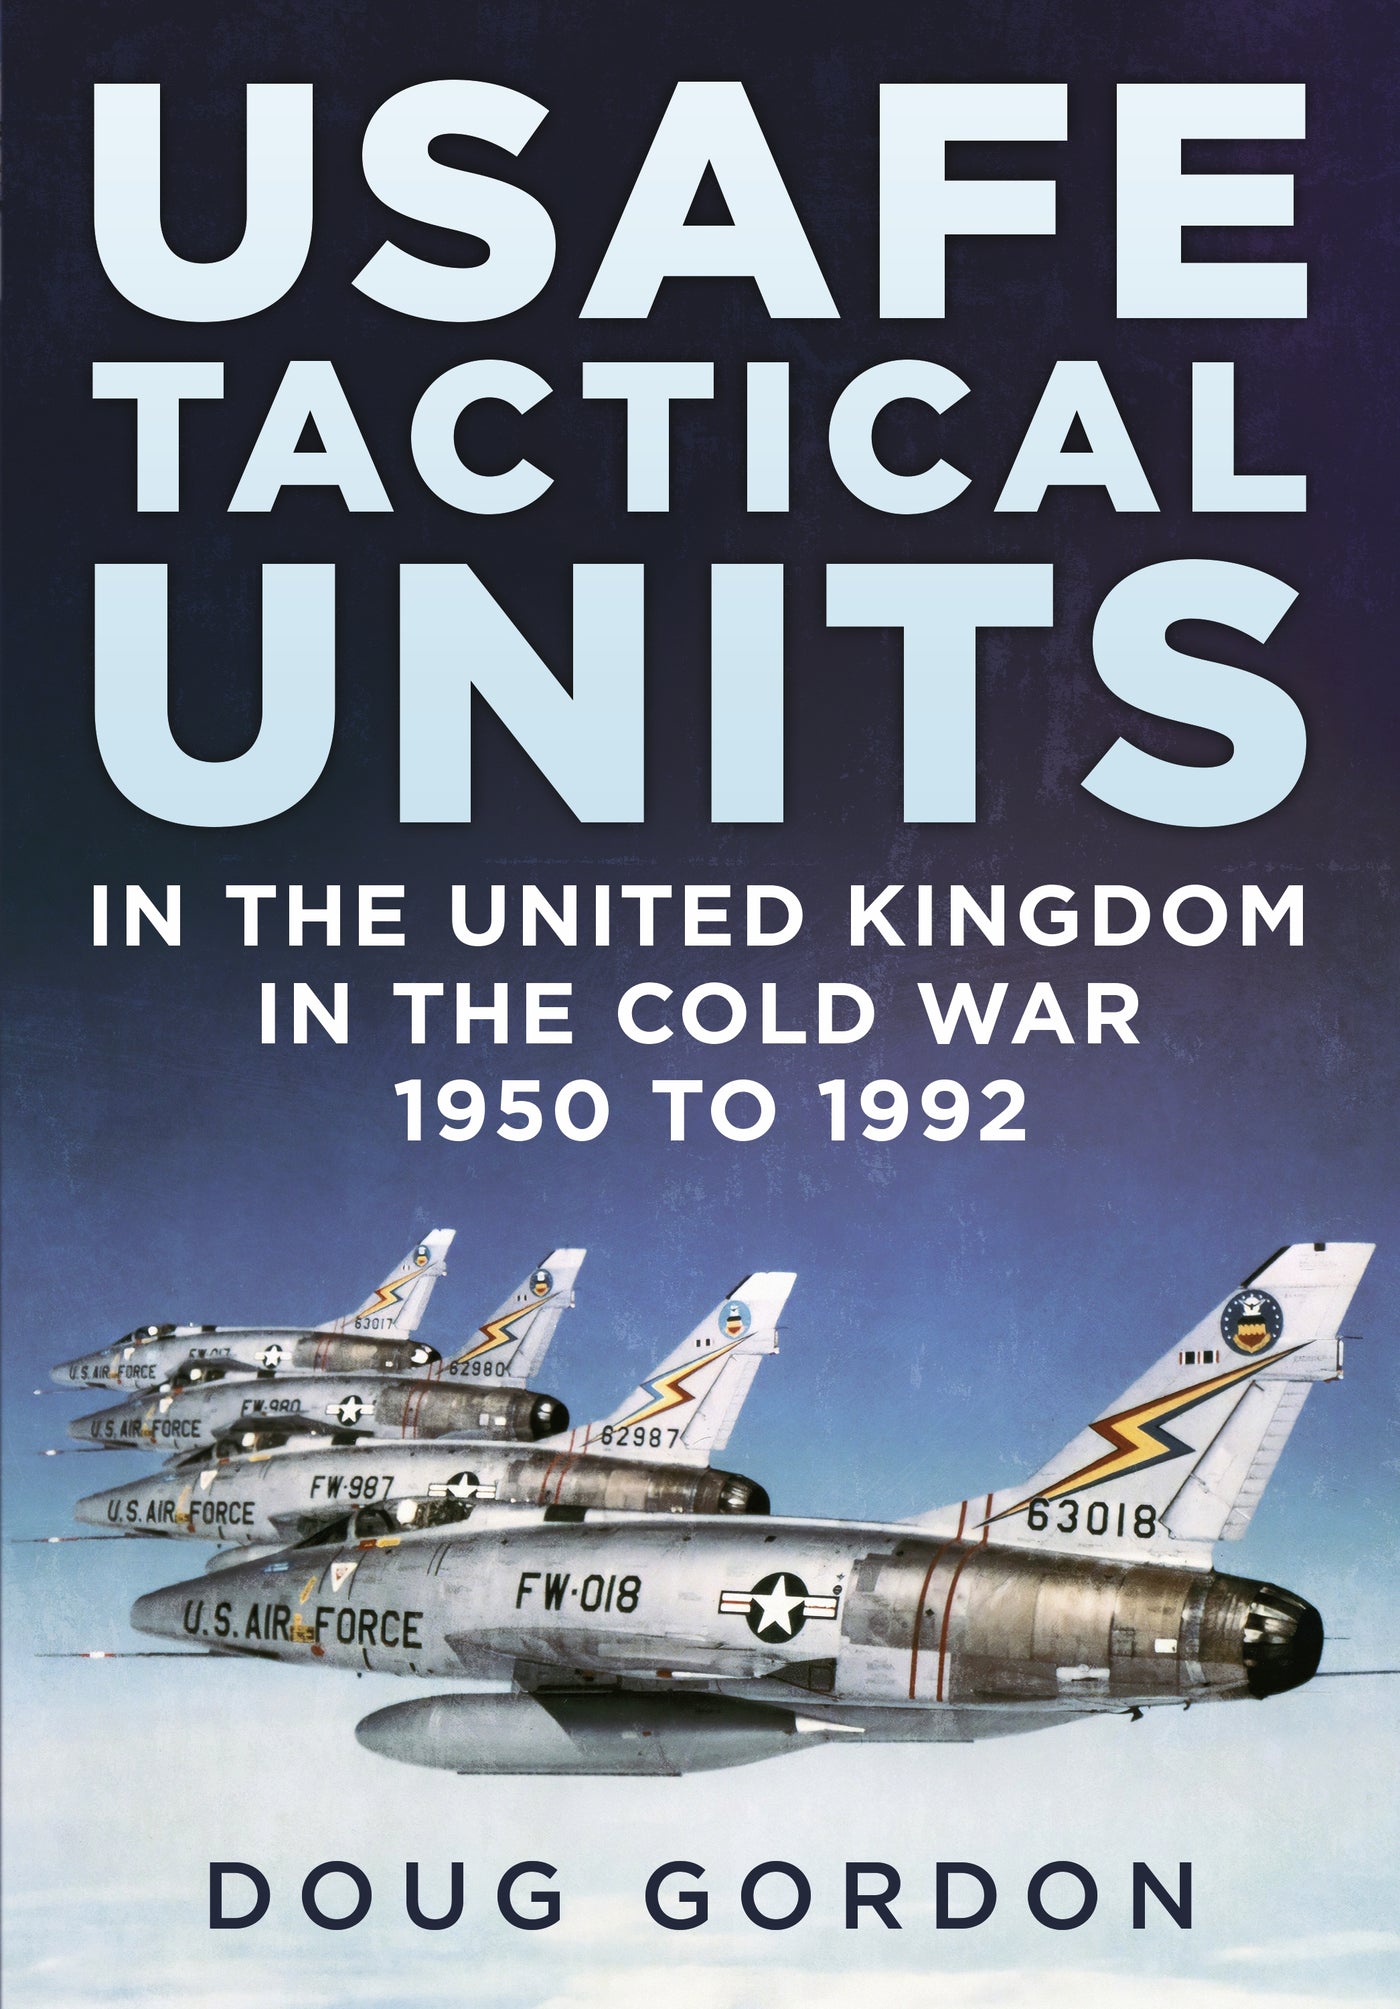 Taktische Einheiten der USAFE im Vereinigten Königreich im Kalten Krieg 